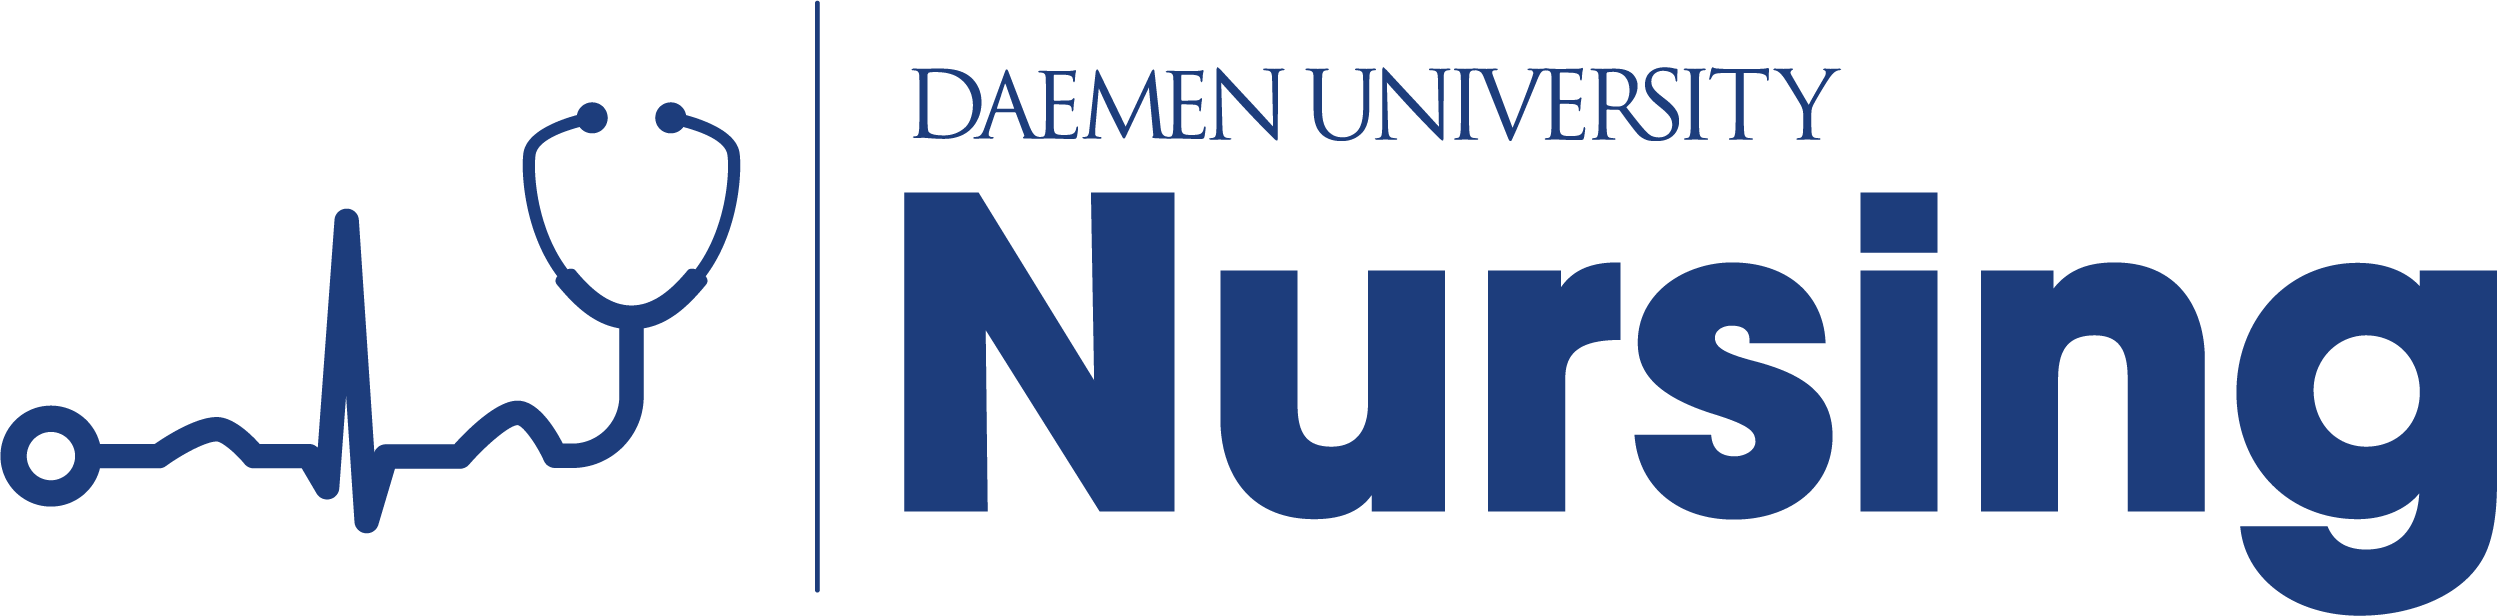 Daemen University Nursing